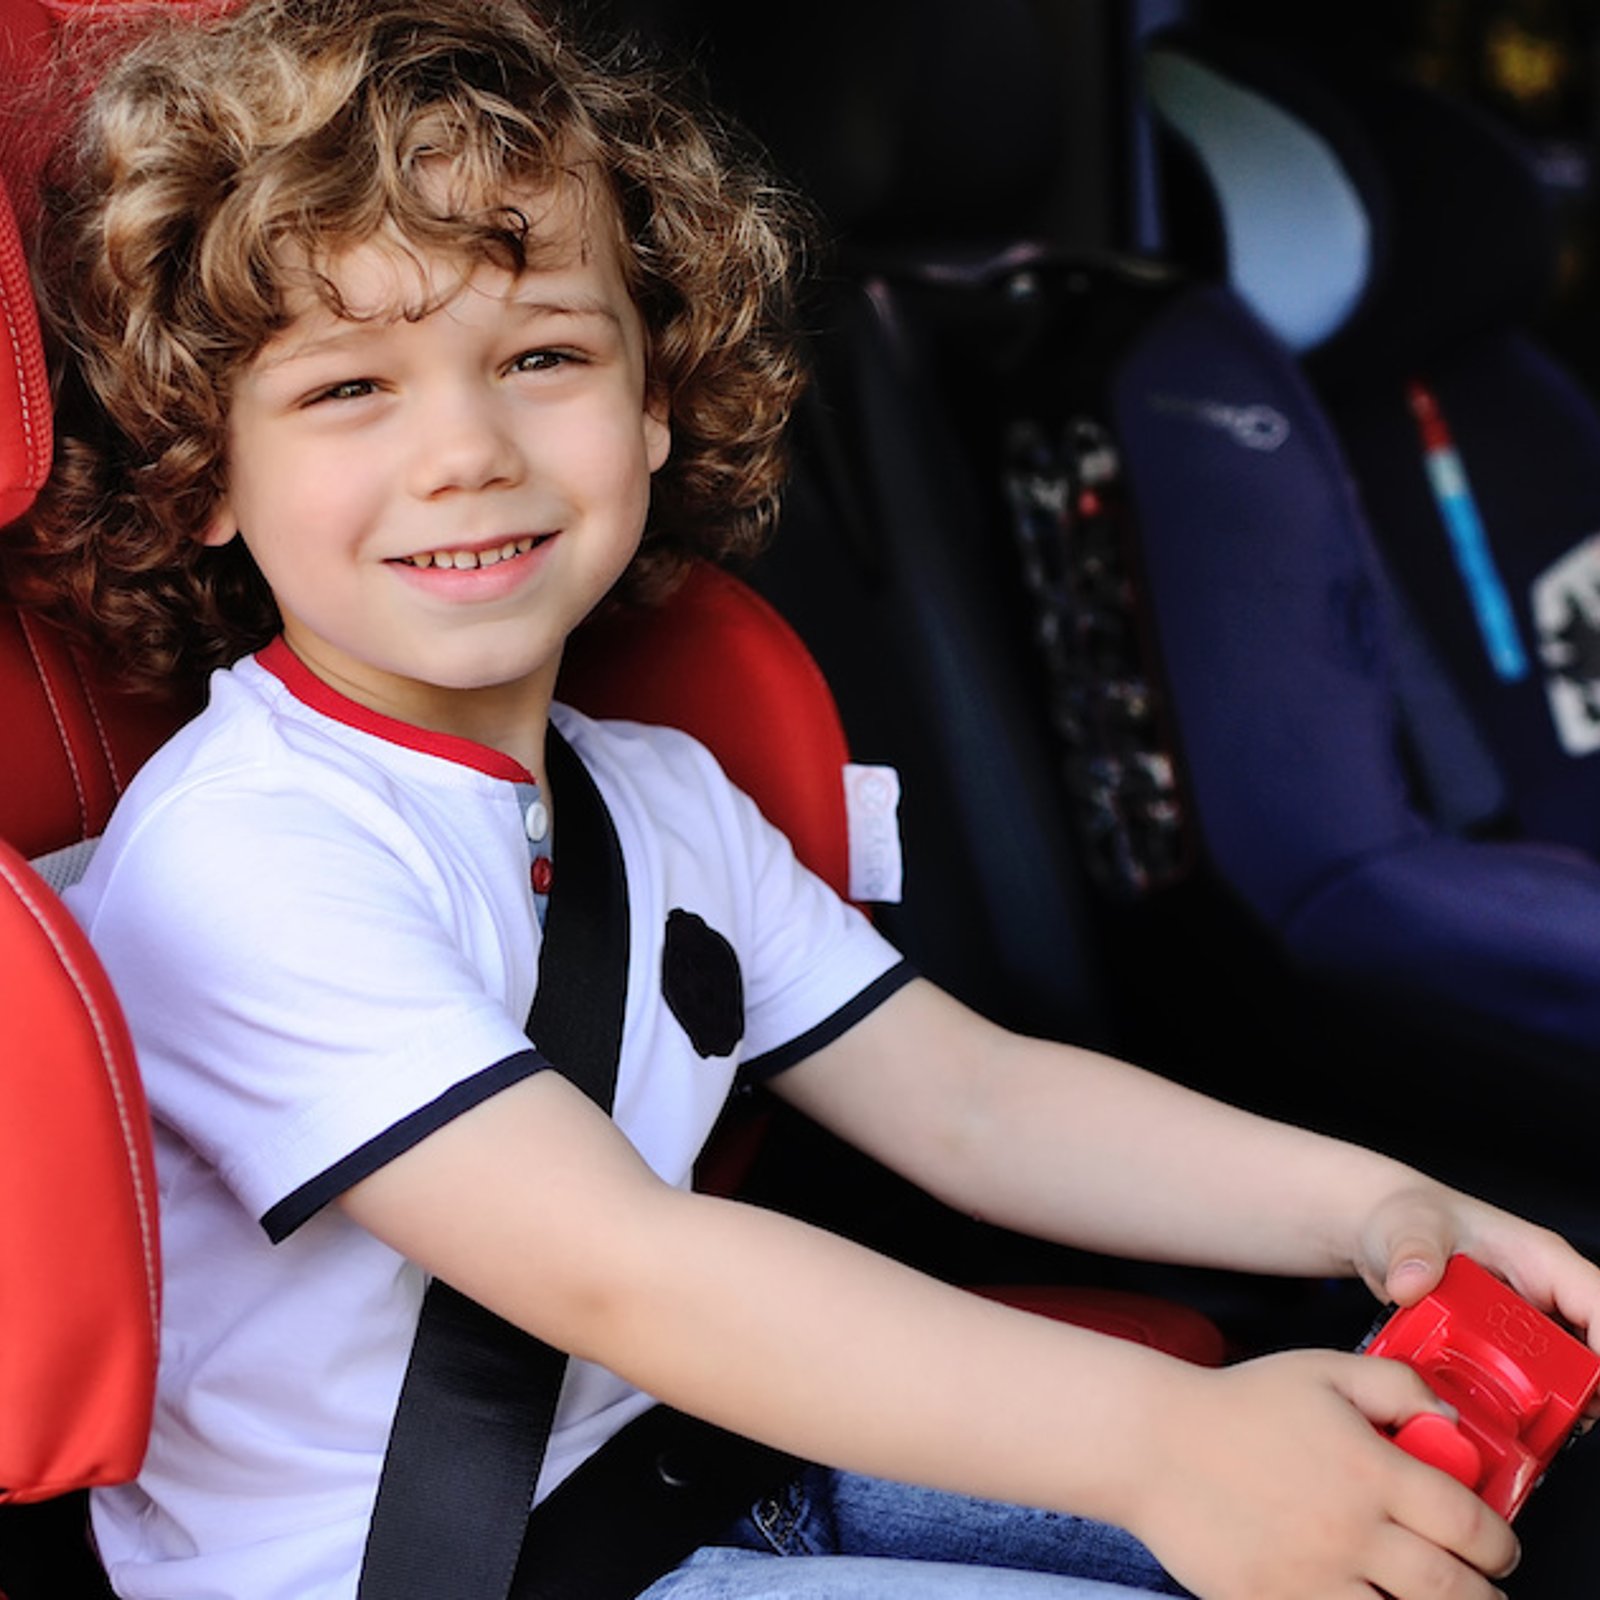 De nouvelles règles concernant les sièges d’auto pour enfants entreront en vigueur en 2019 